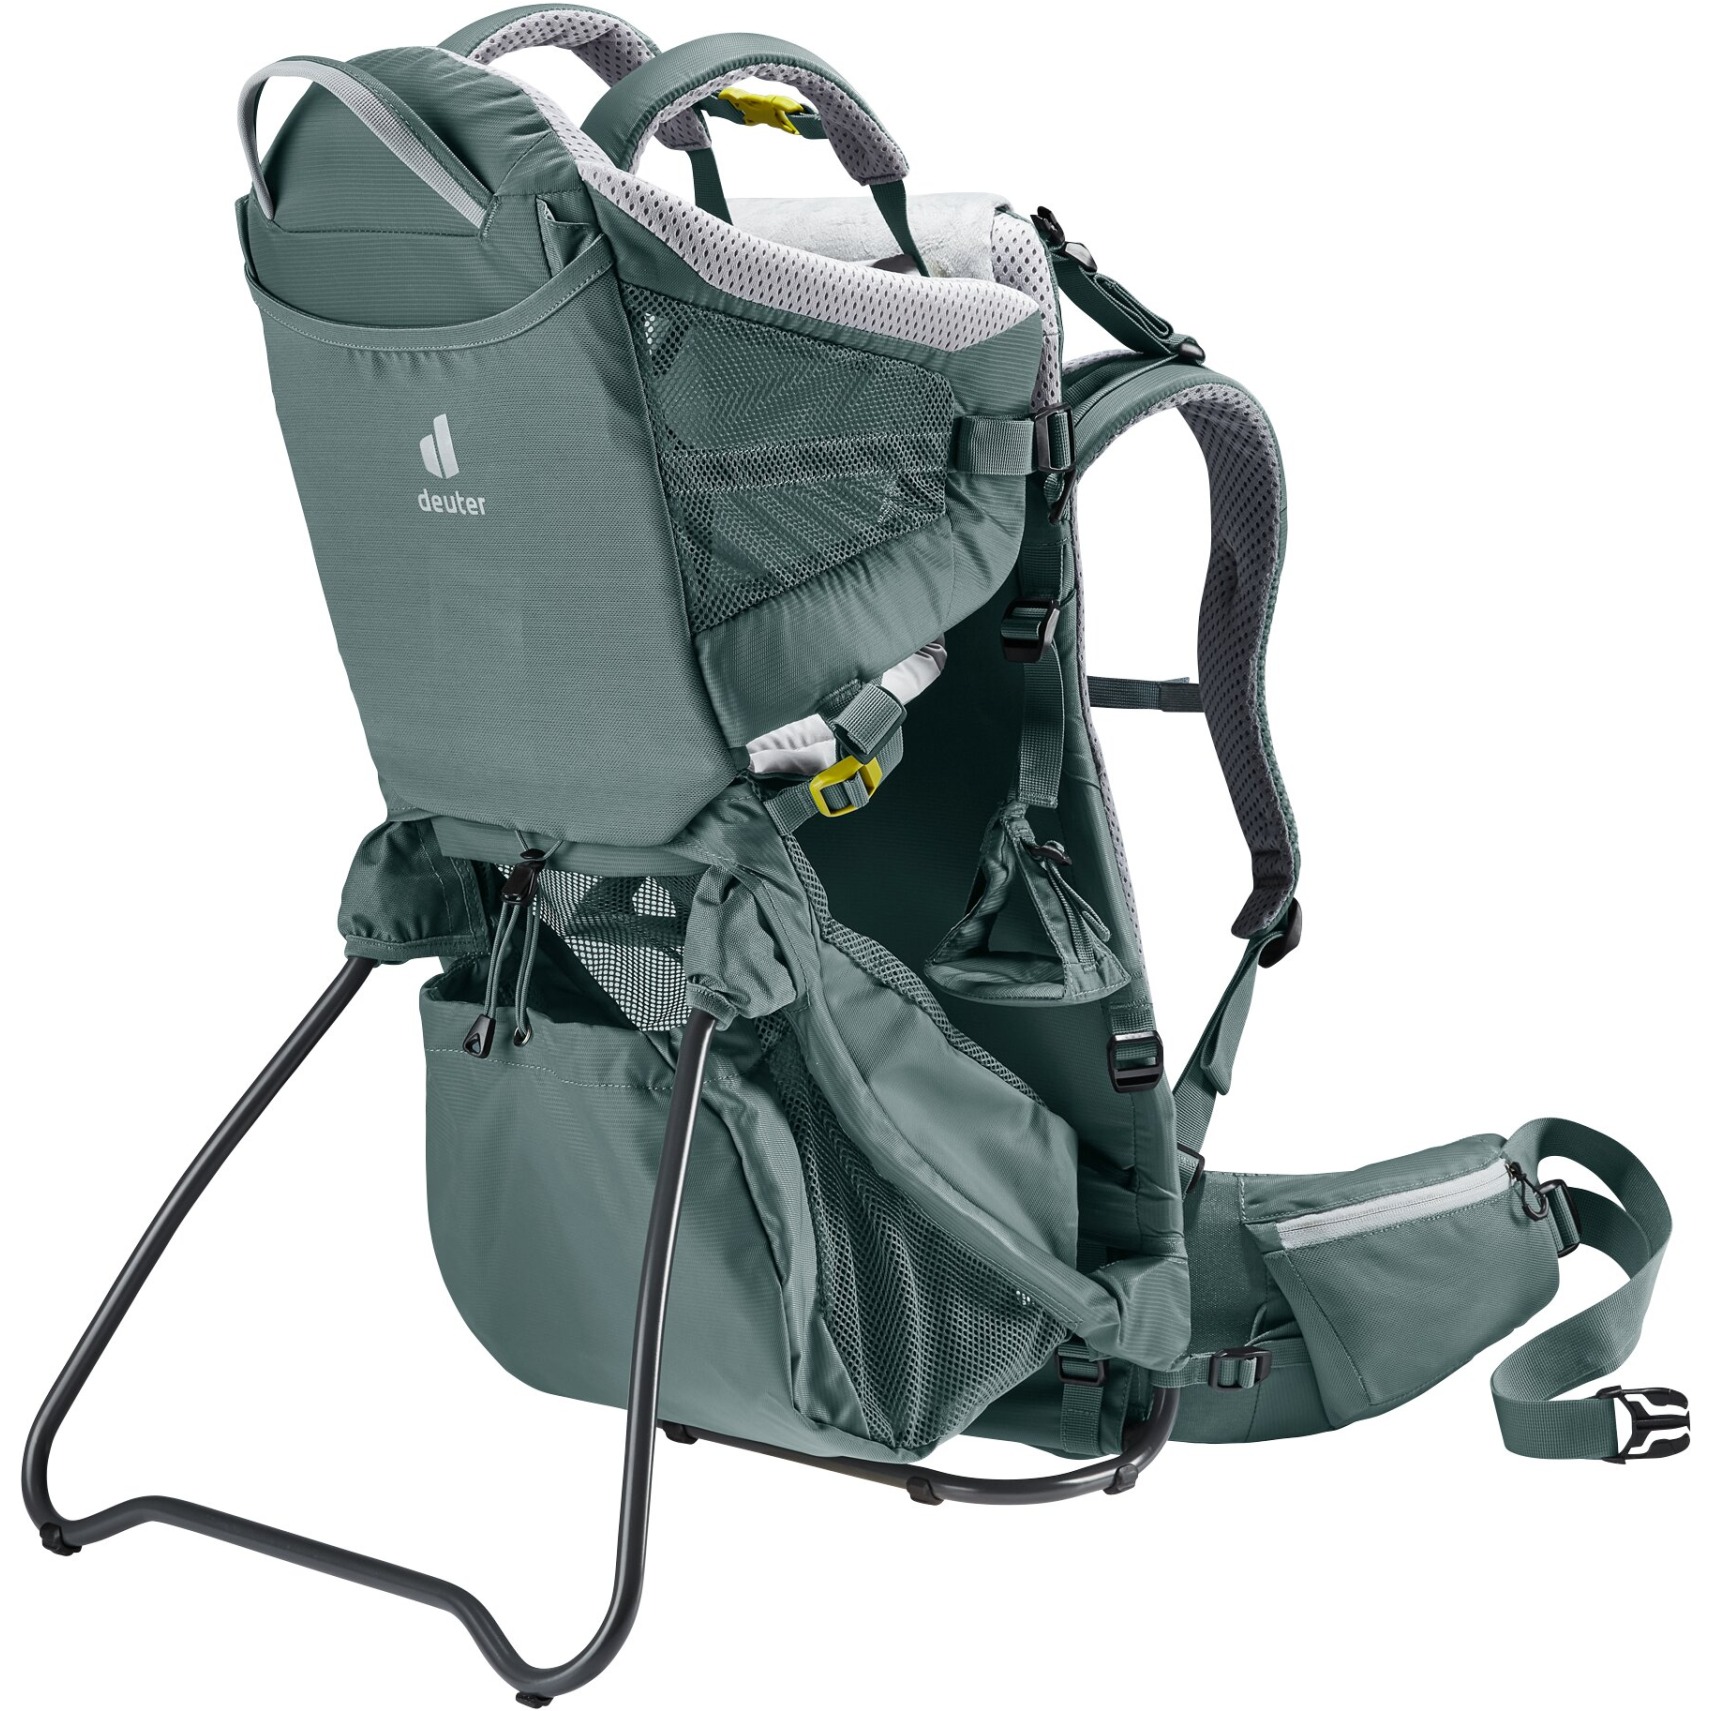 Productfoto van Deuter Kid Comfort Active Child Carrier - teal